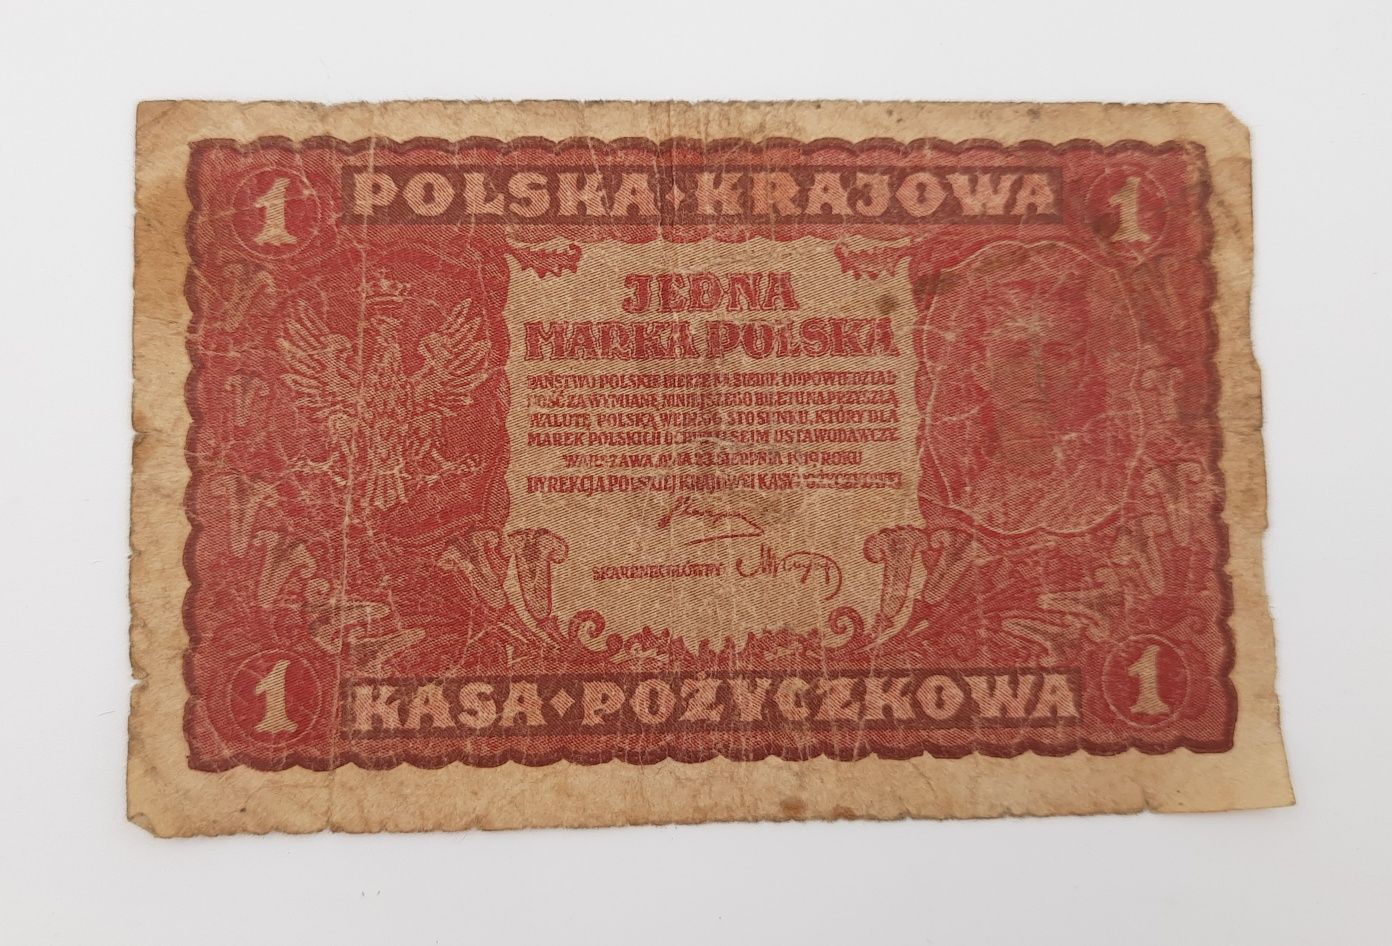 Stary Banknot kolekcjonerski 1 marka Polska 1919